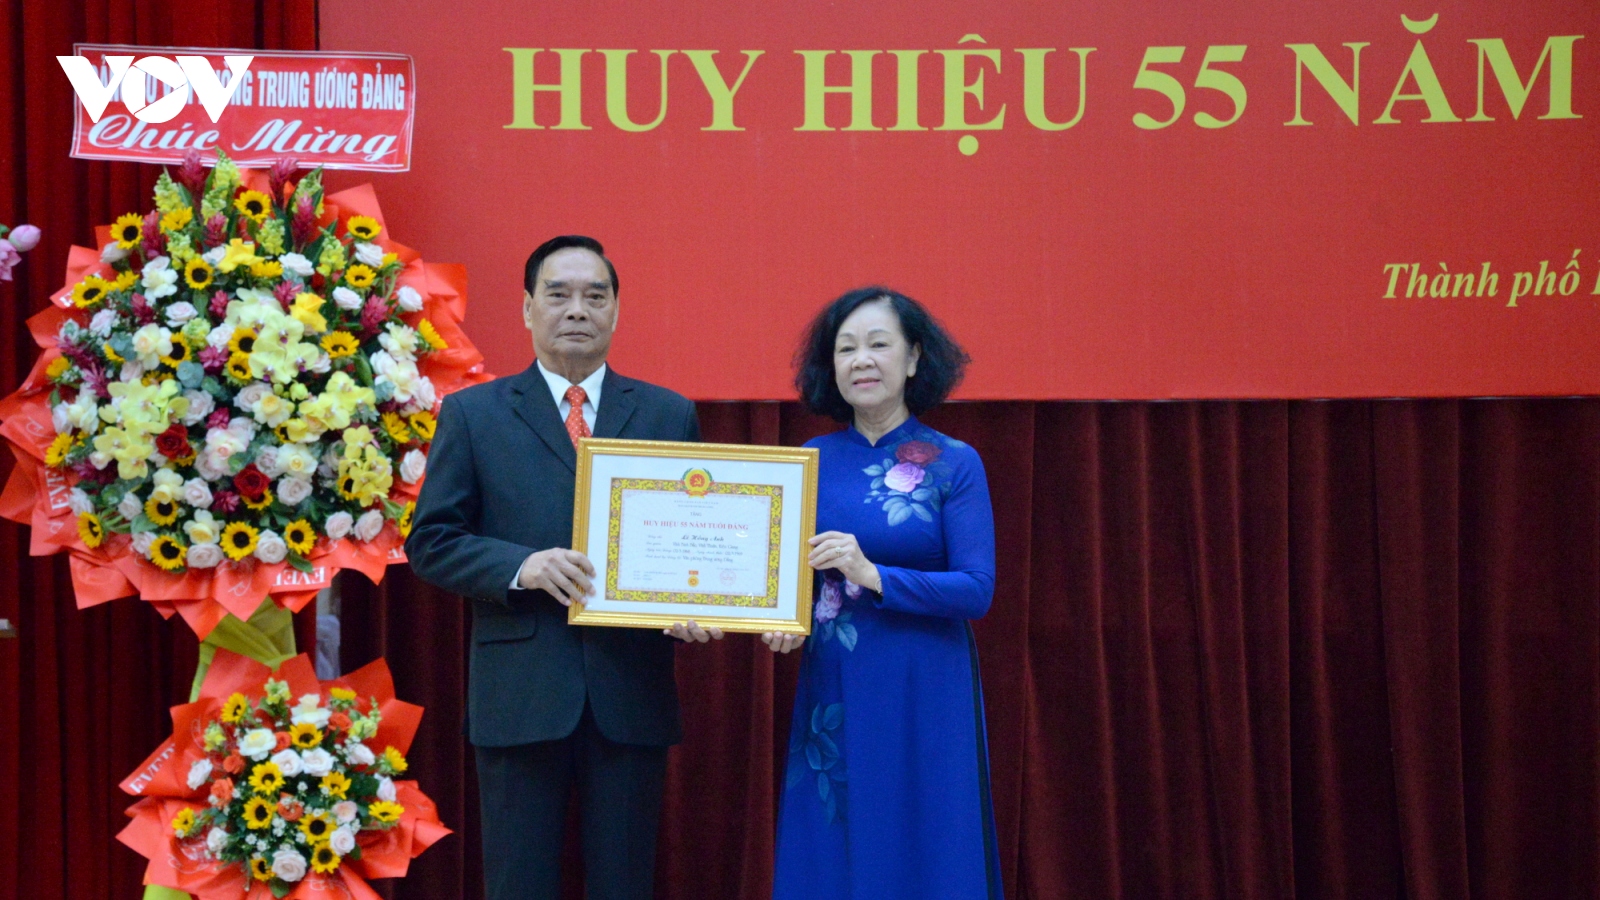 Nguyên Thường trực Ban Bí thư Lê Hồng Anh nhận huy hiệu 55 năm tuổi Đảng